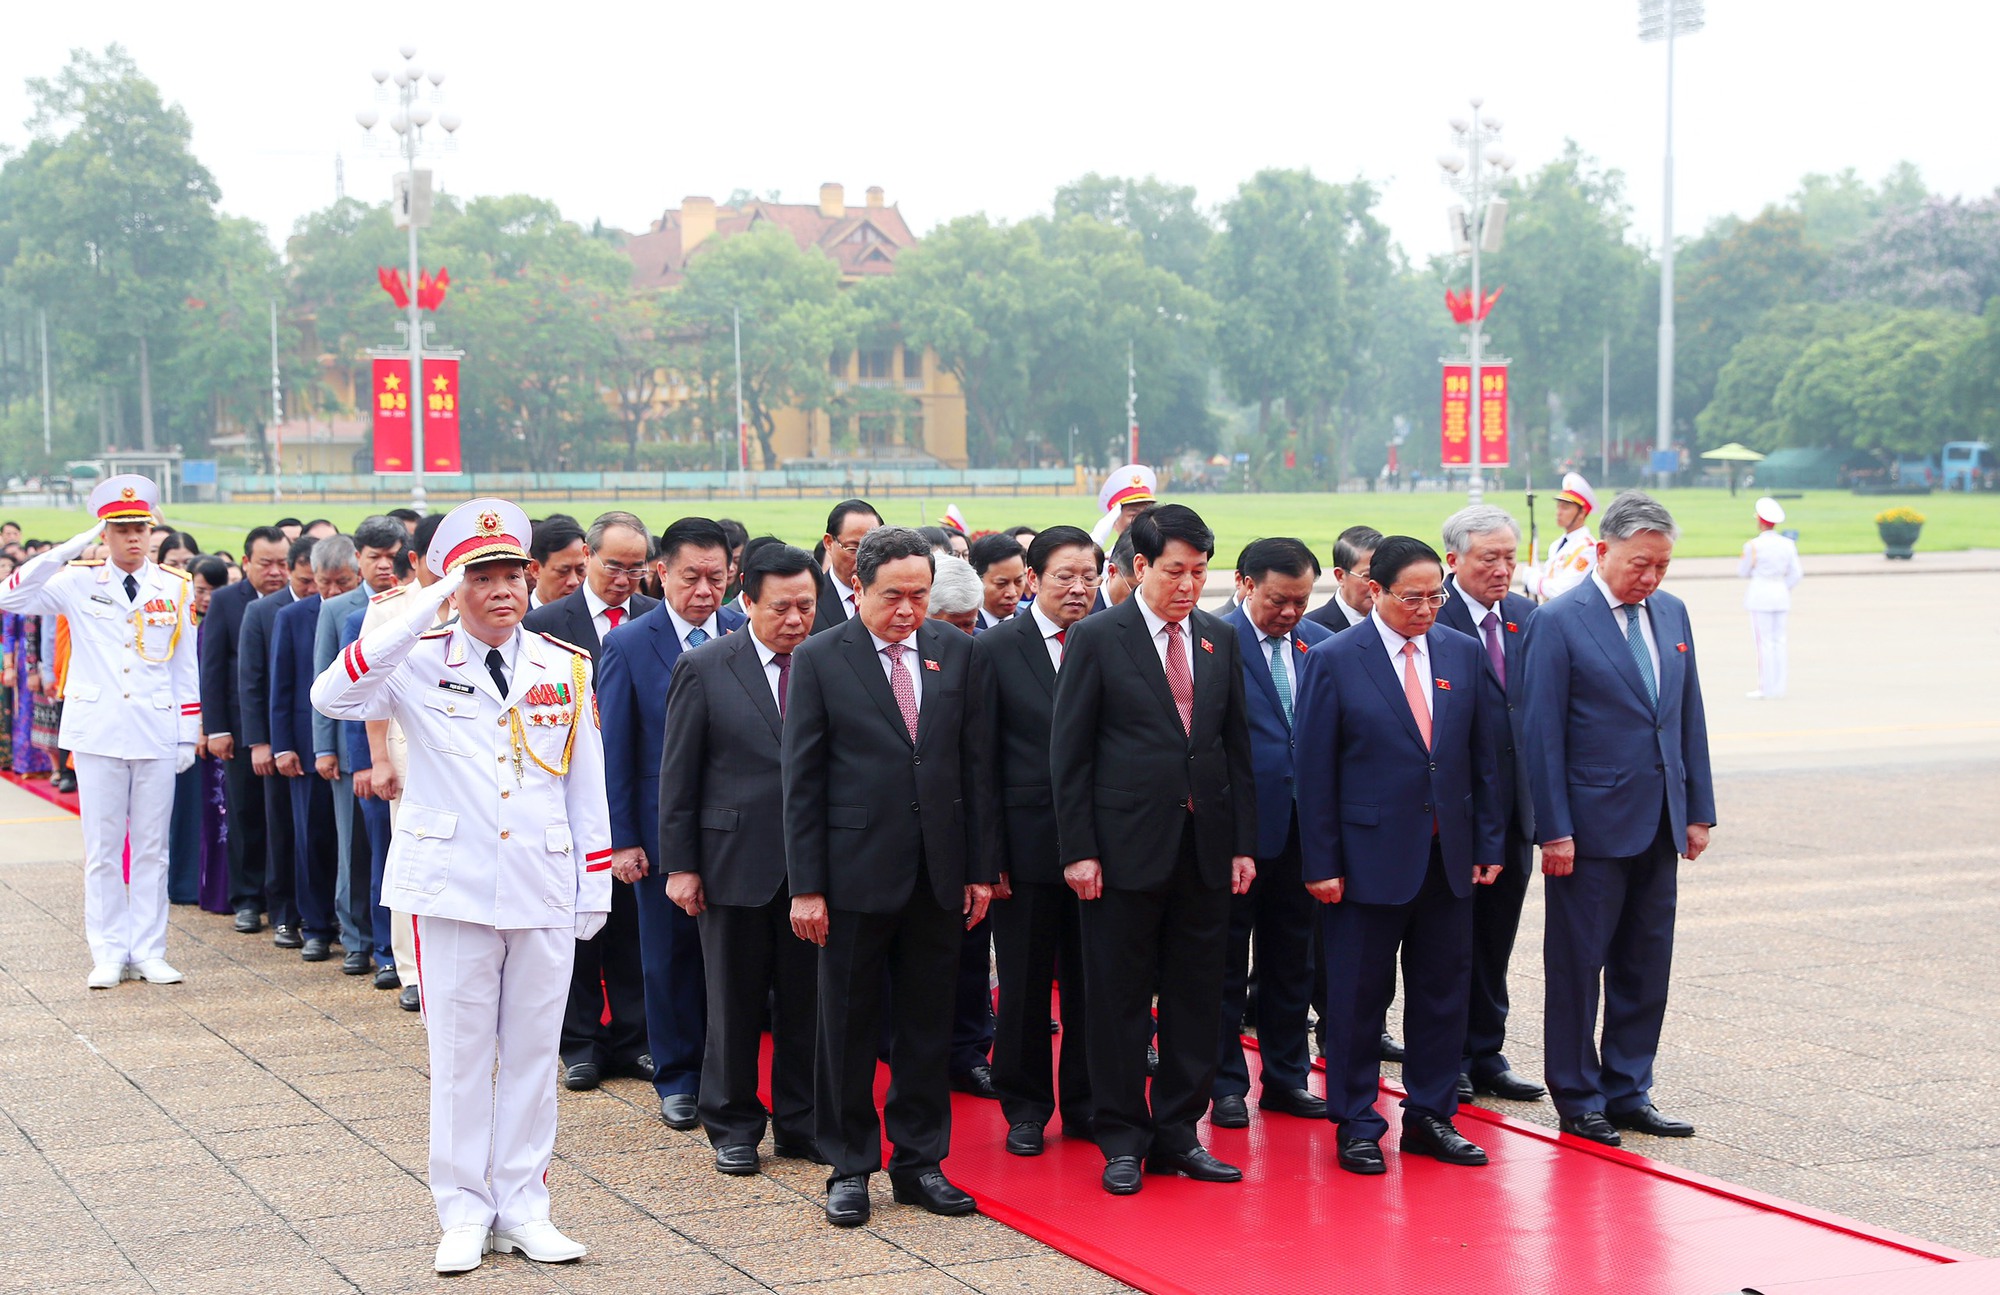 Lãnh đạo Đảng, Nhà nước và các đại biểu Quốc hội vào Lăng viếng Chủ tịch Hồ Chí Minh trước khai mạc Kỳ họp thứ 7, Quốc hội khóa XV - Ảnh 8.